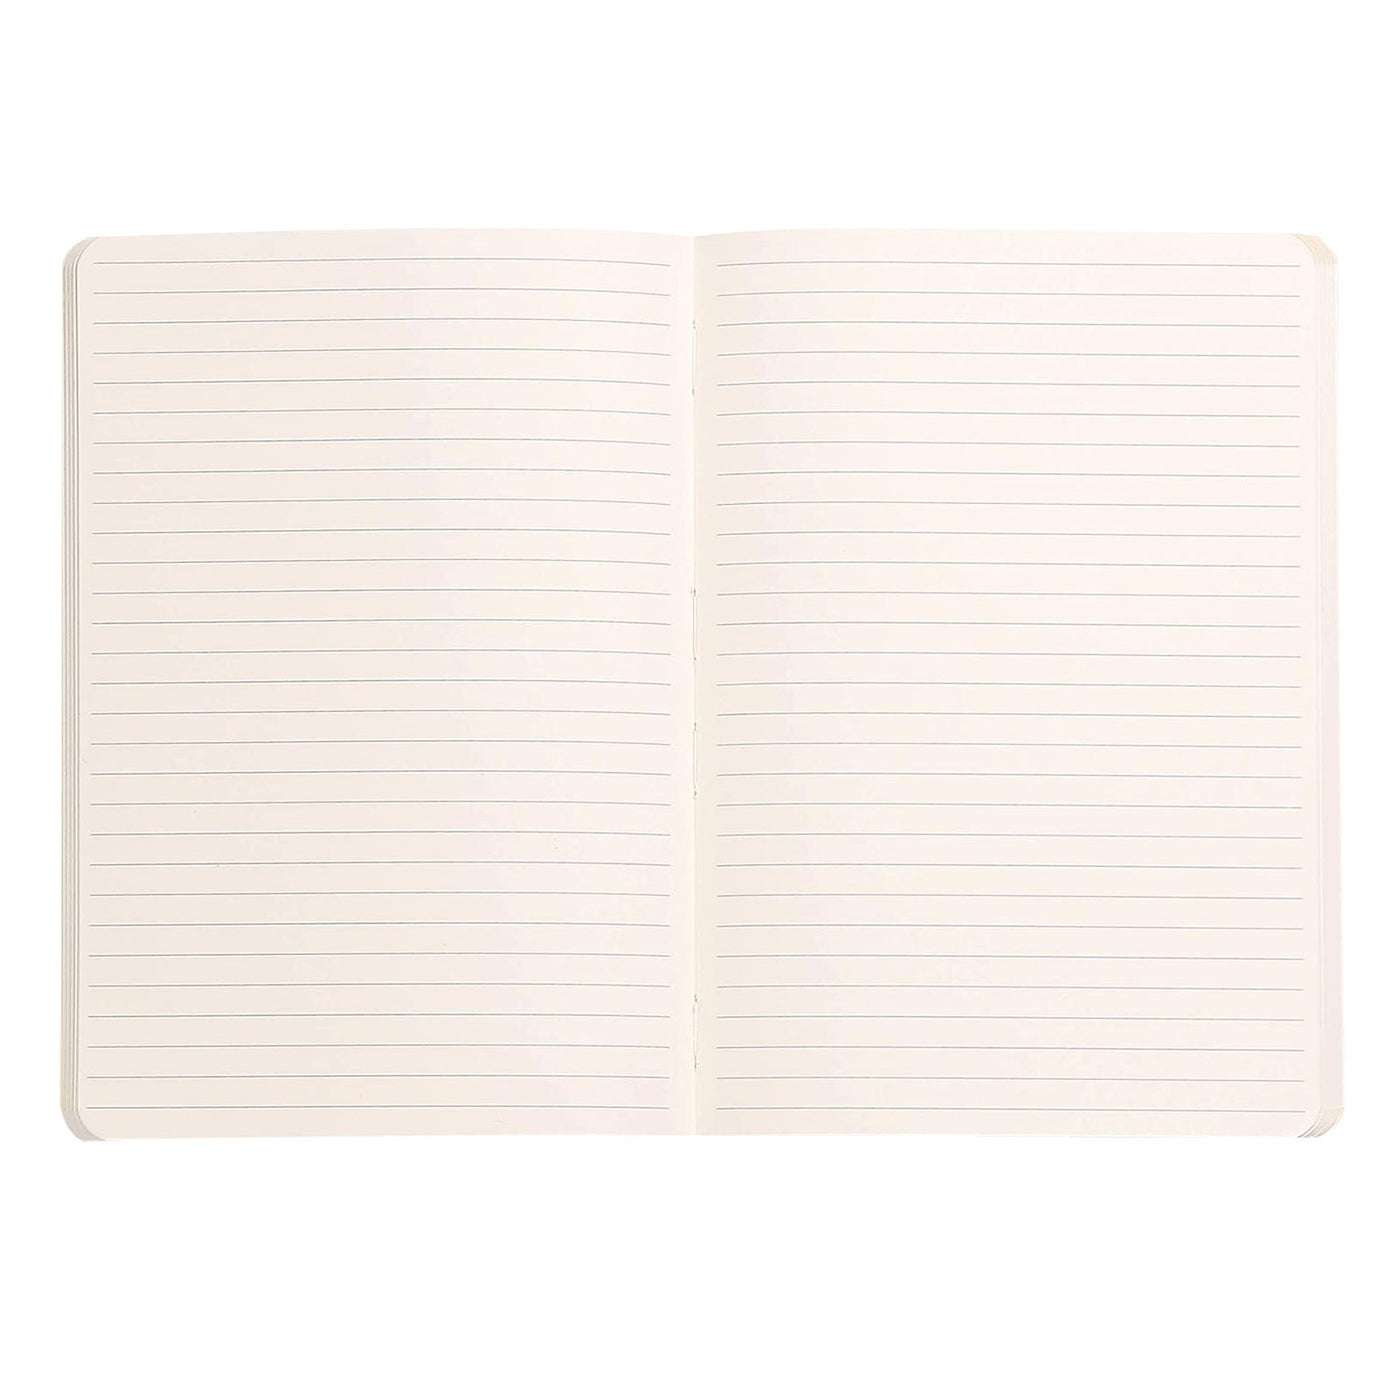 Rhodiarama Soft Cover Beige Notebook - A5 Ruled 2